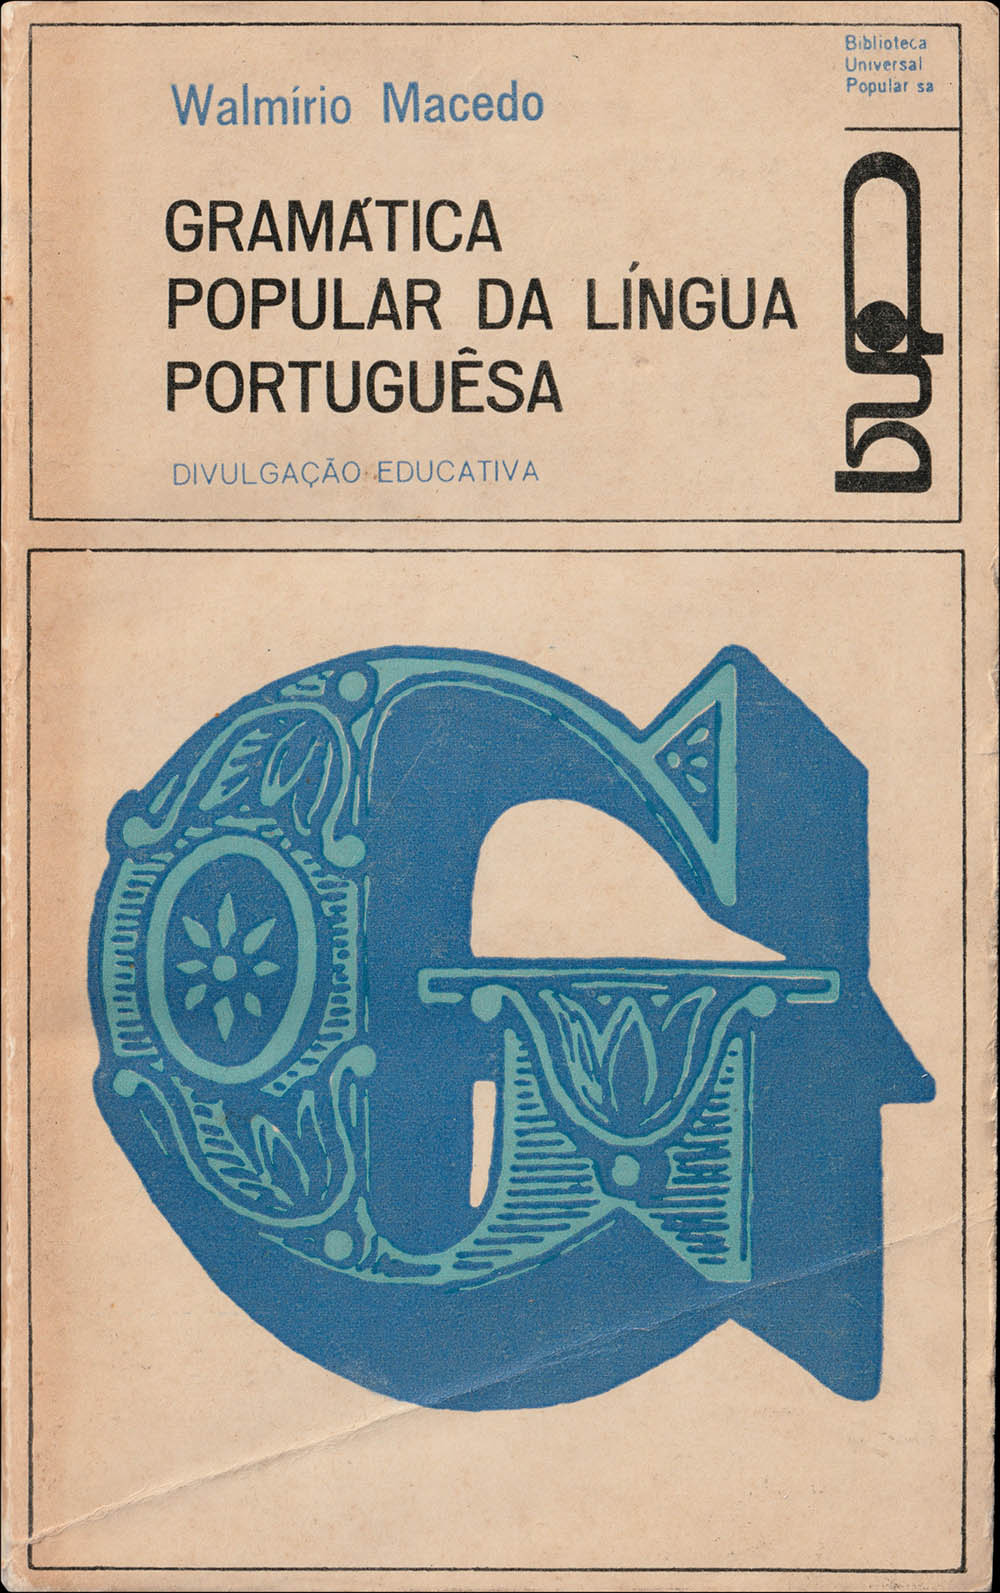 Gramática Popular da Língua Portuguesa